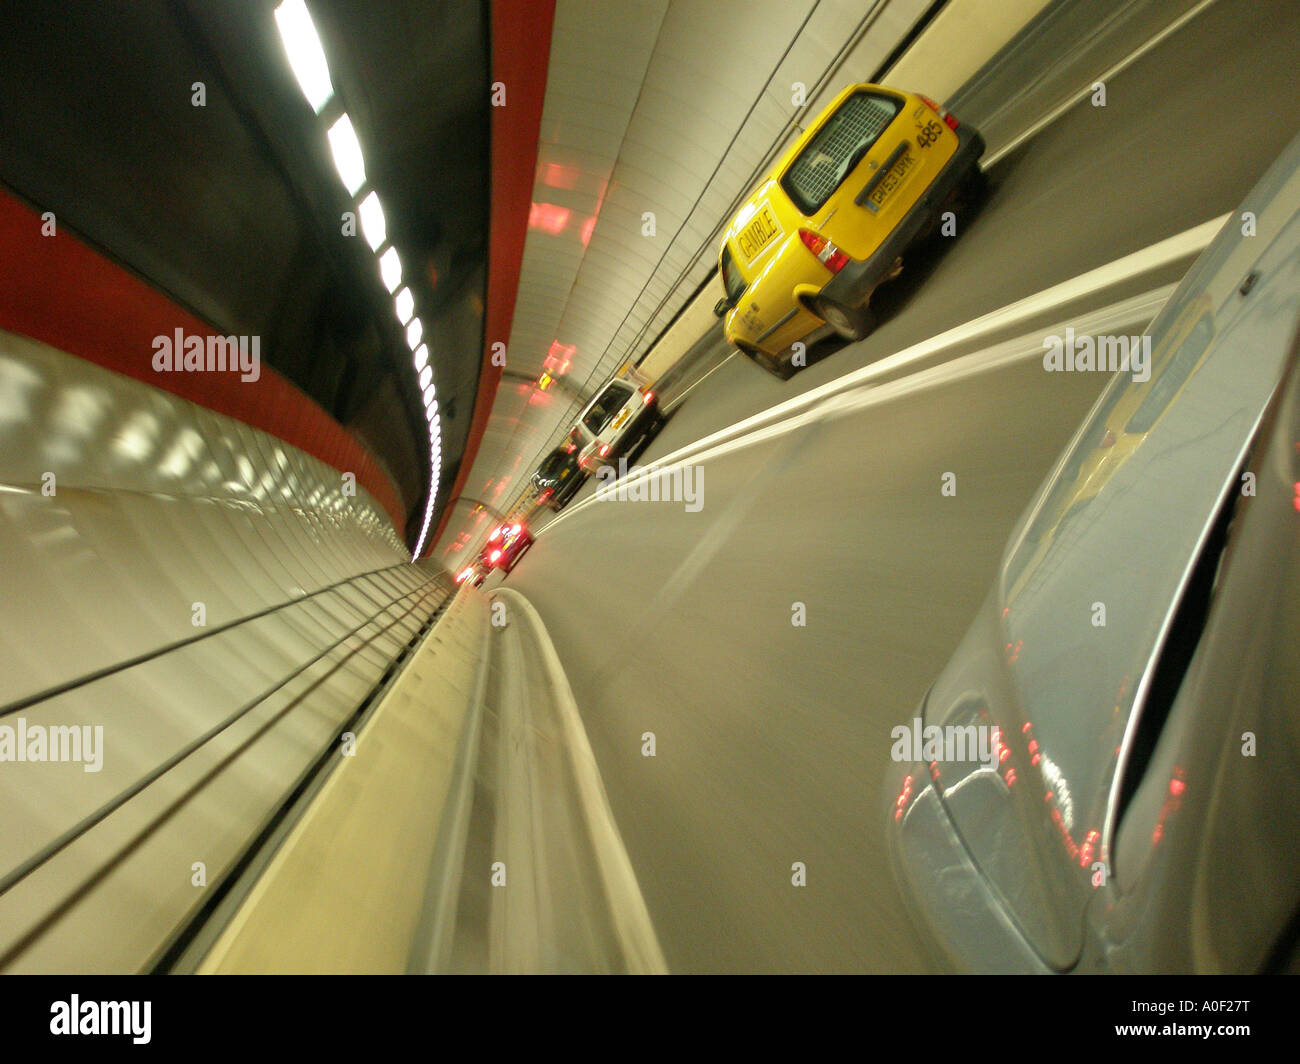 walls blur as car drives through road tunnel Stock Photo